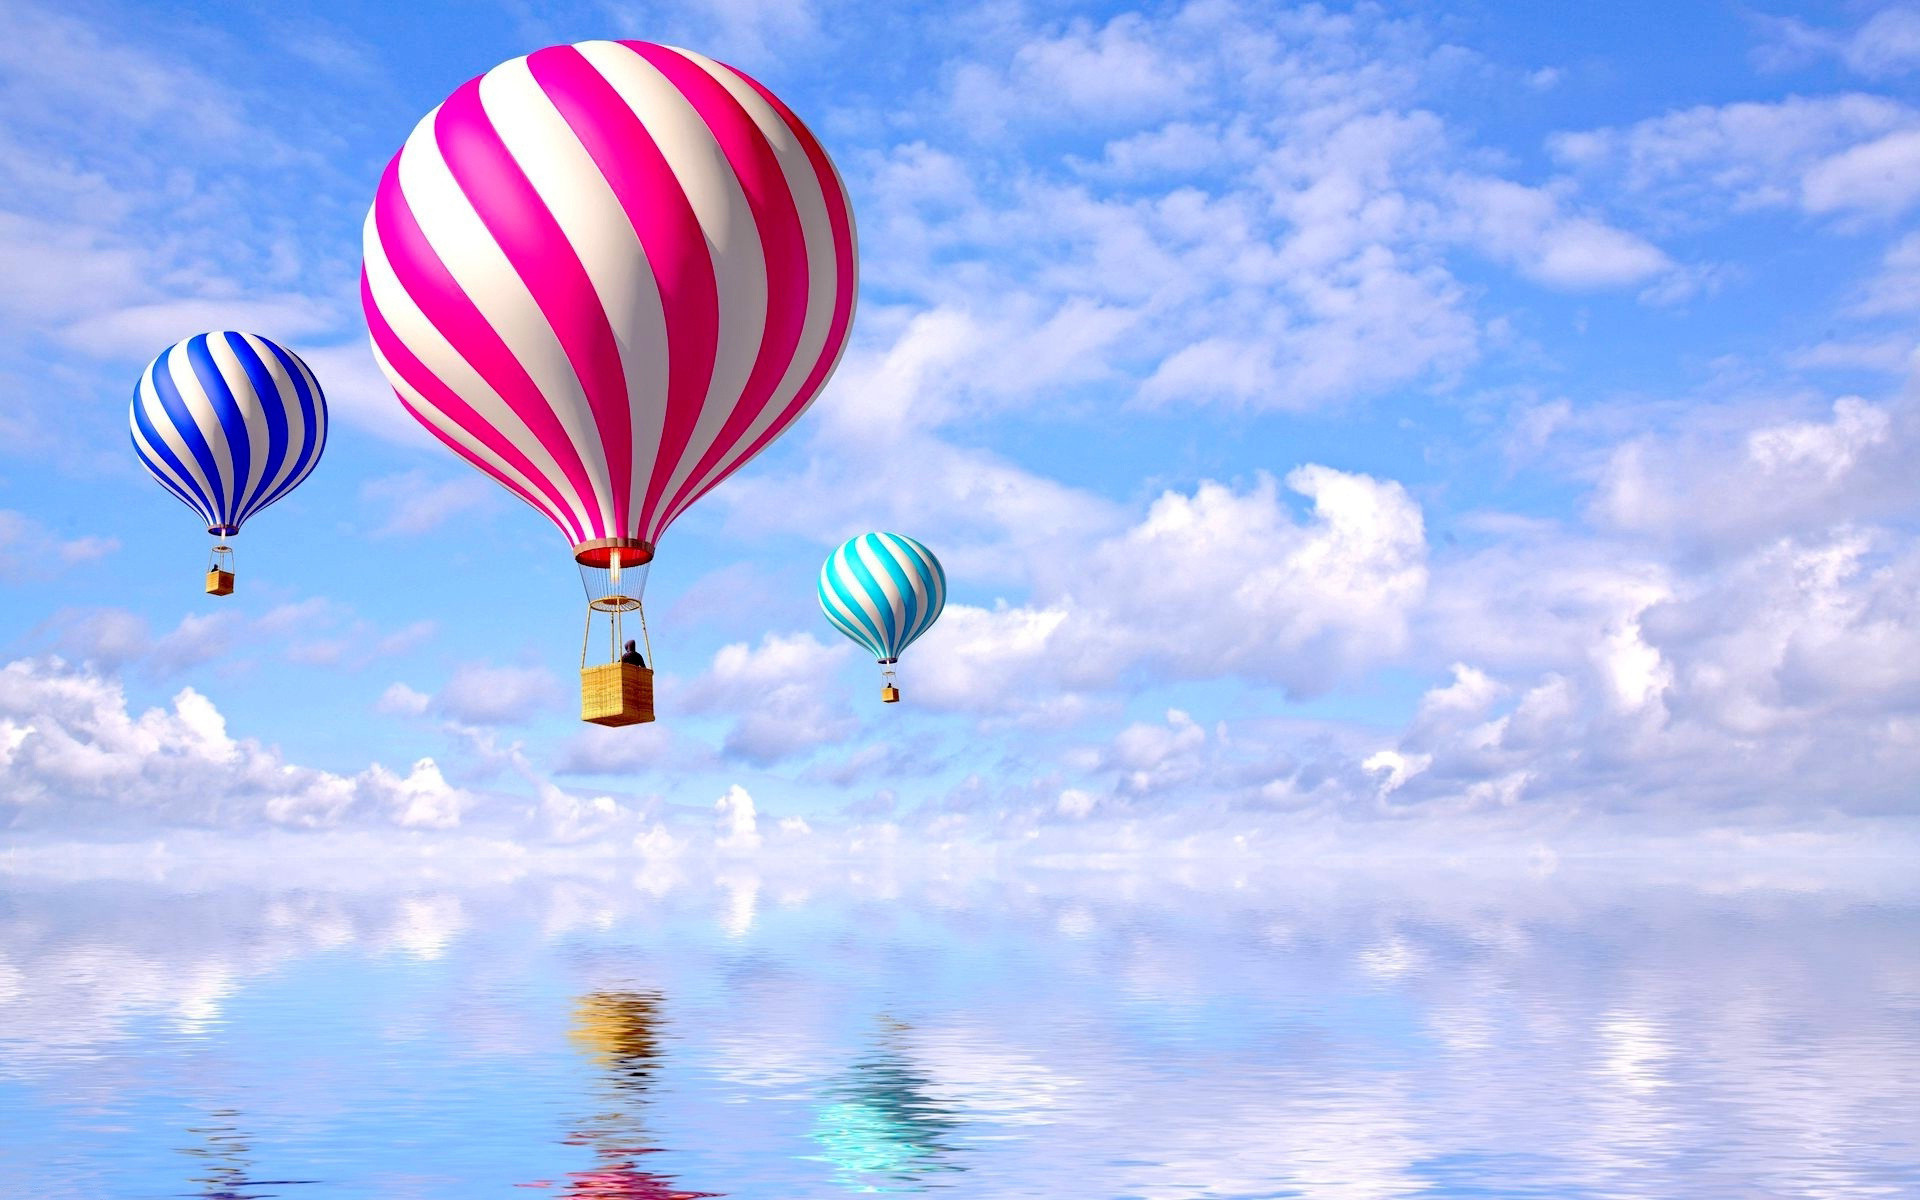 воздушные шары, небо, облака, вода, река, обои скачать, Balloons, sky, clouds, water, river, wallpaper download